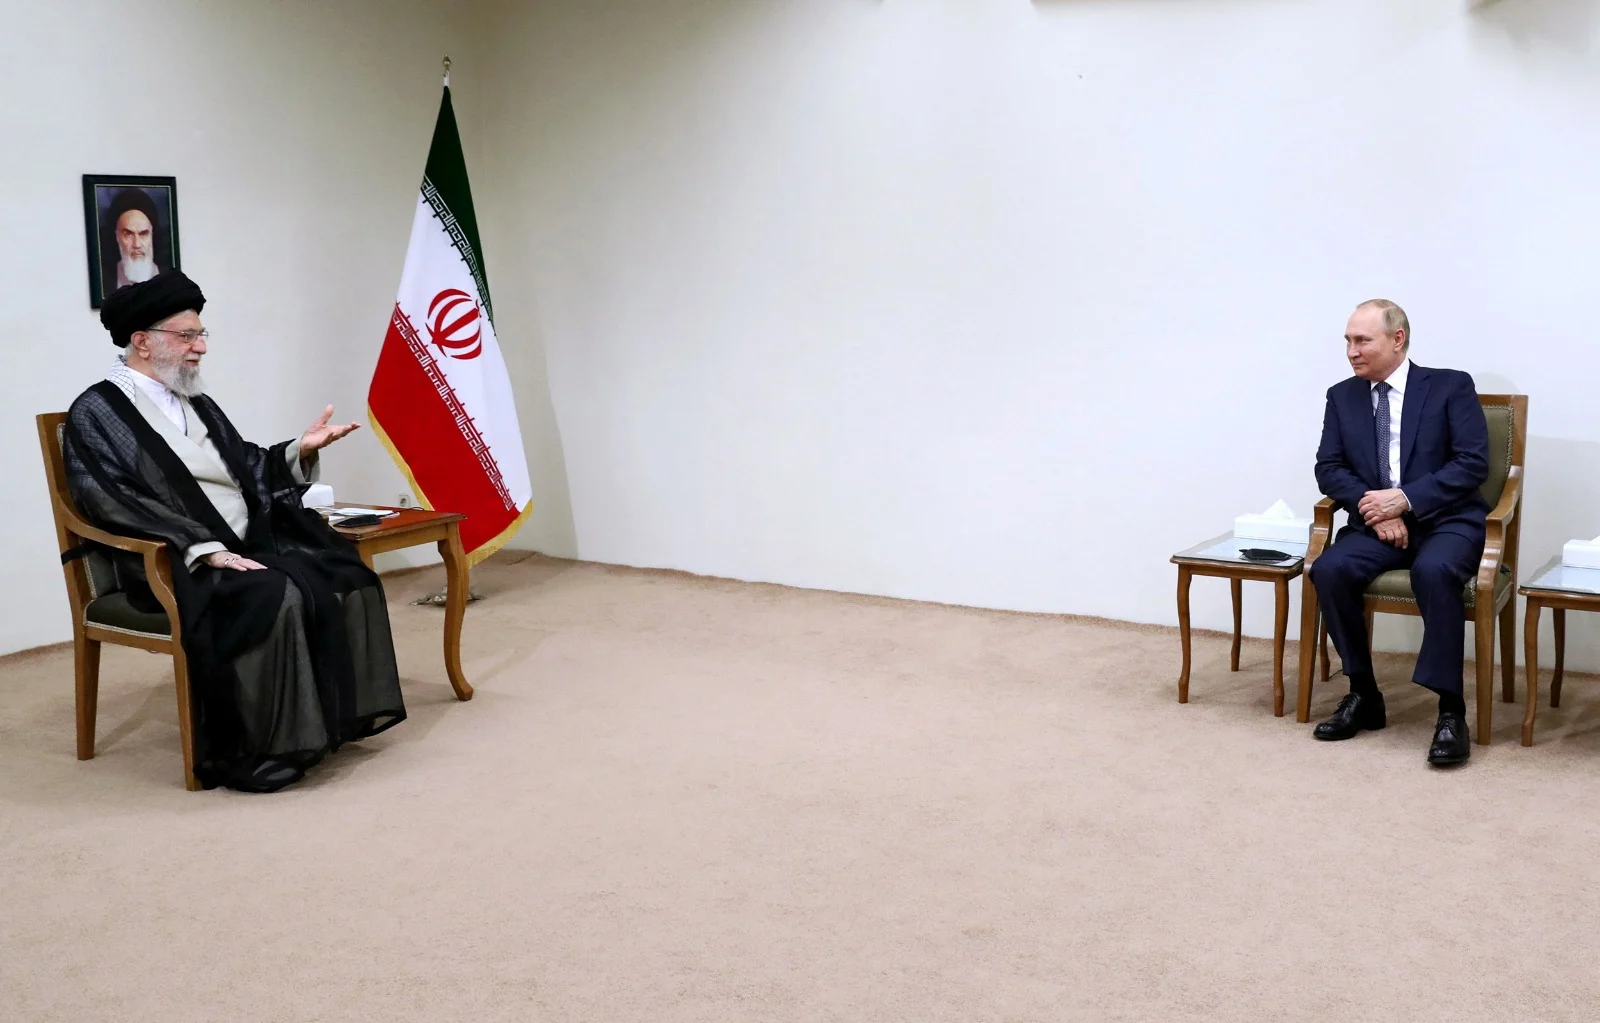 פגישת המנהיג העליון של איראן, עלי חמינאי ונשיא רוסיה, ולדימיט פוטין